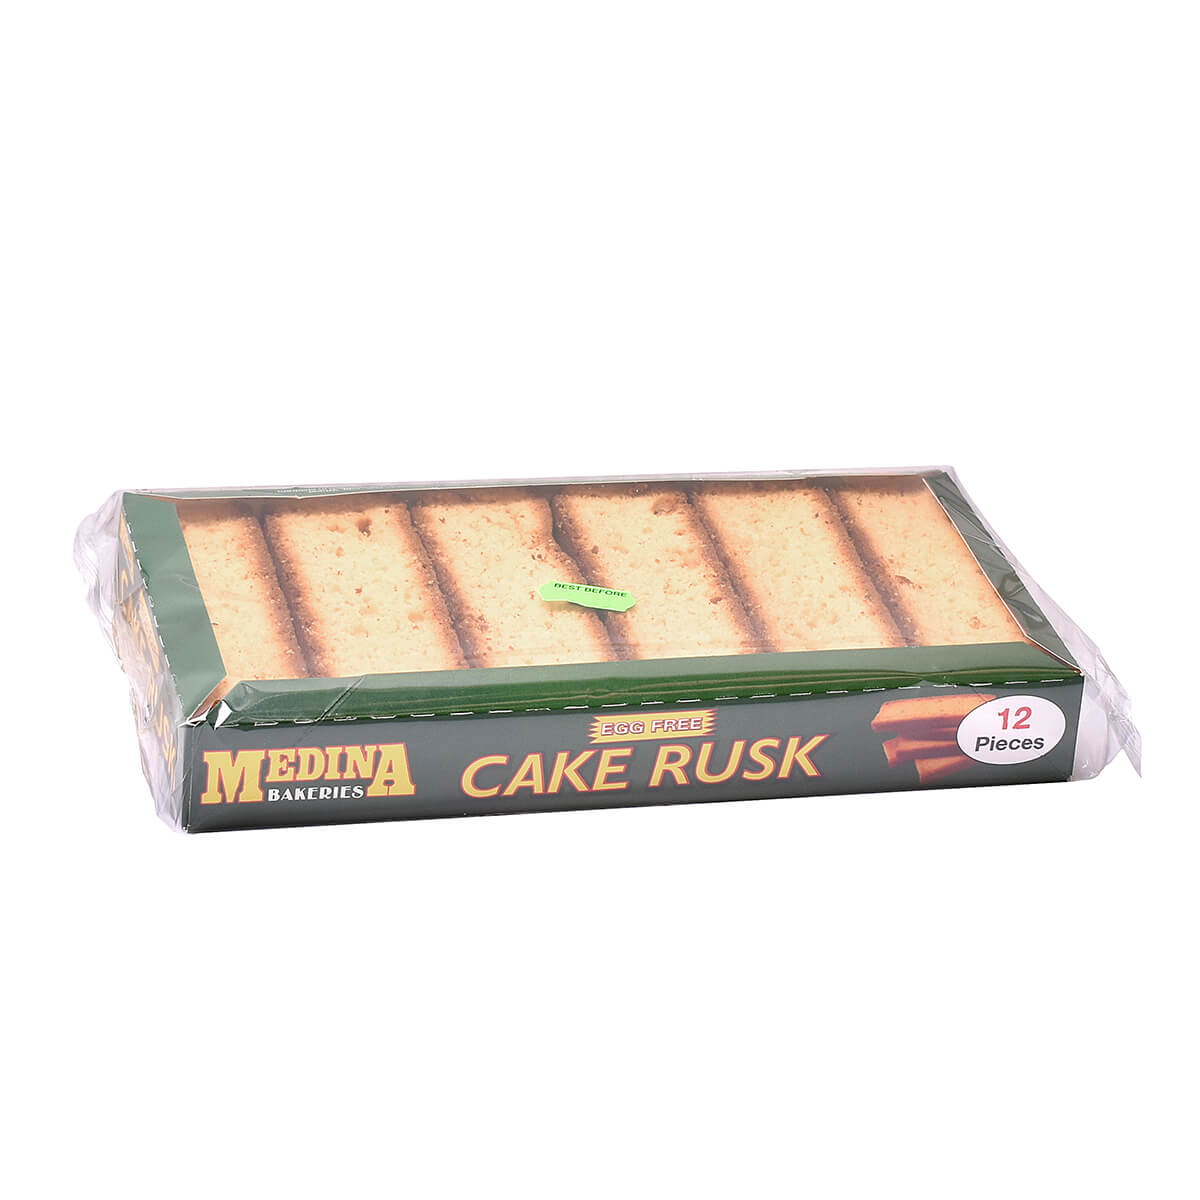 Medina Egg-Free Rusk Cakes